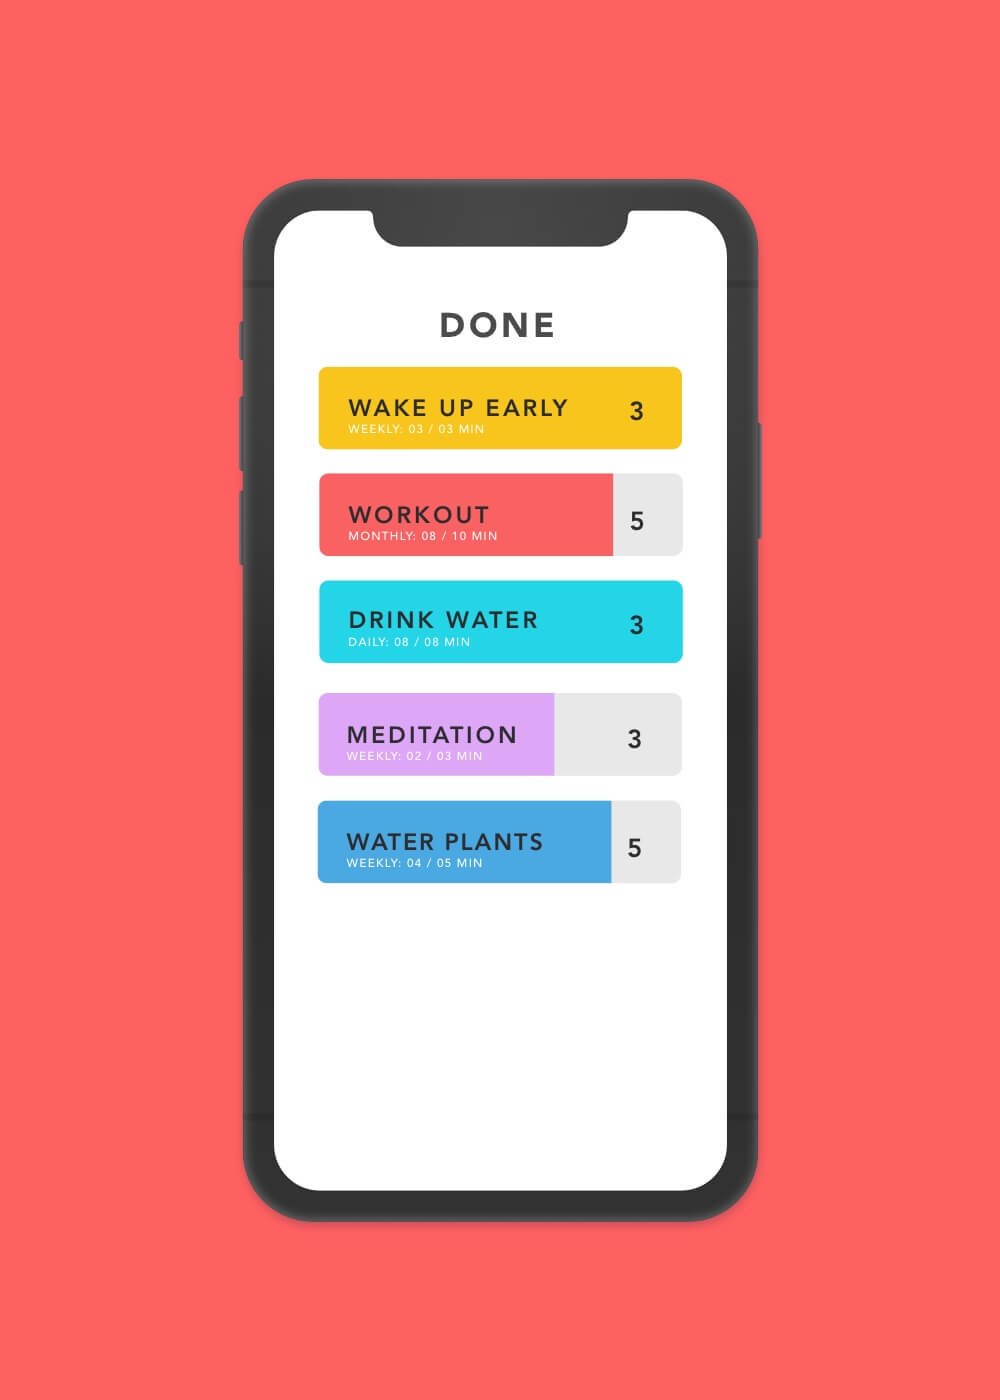 Done App Screenshot: Main Screen of Habit